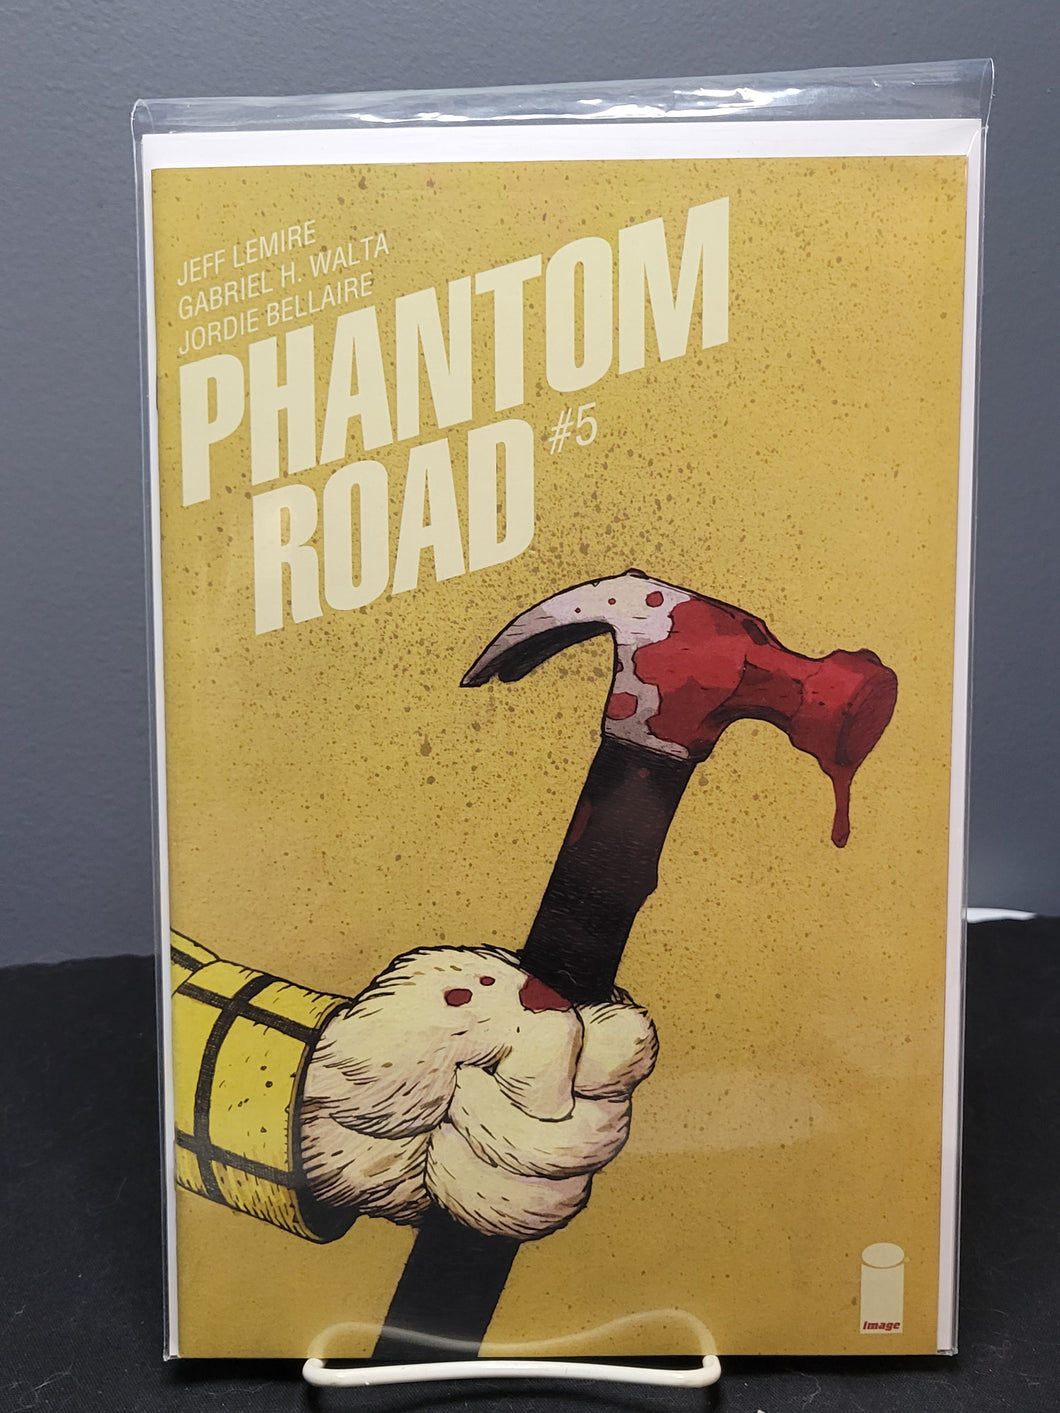 Phantom Road #5